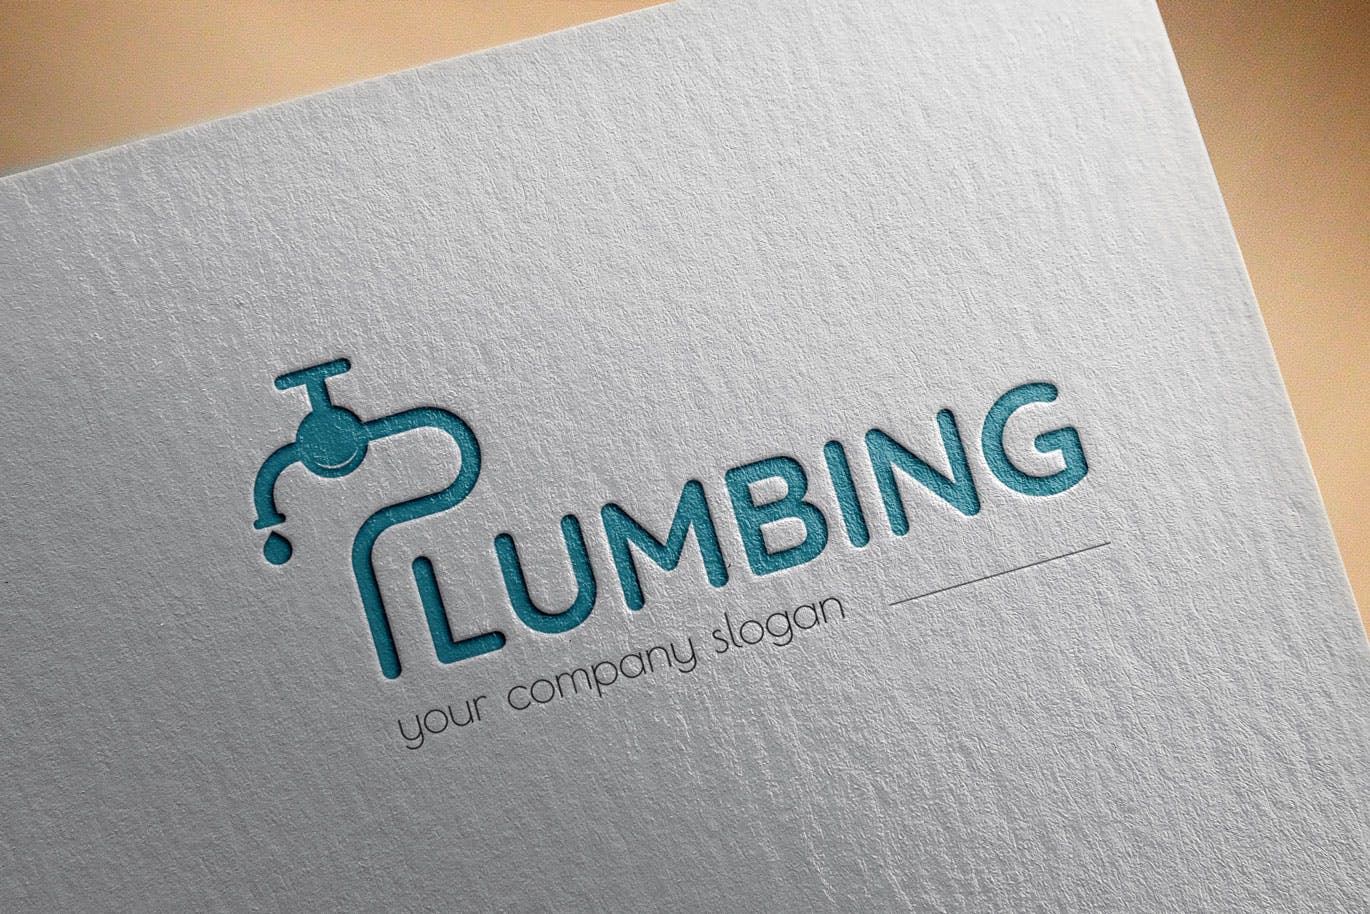 字母P图形供水设施品牌Logo设计蚂蚁素材精选模板 Plumbing Business Logo Template插图(2)